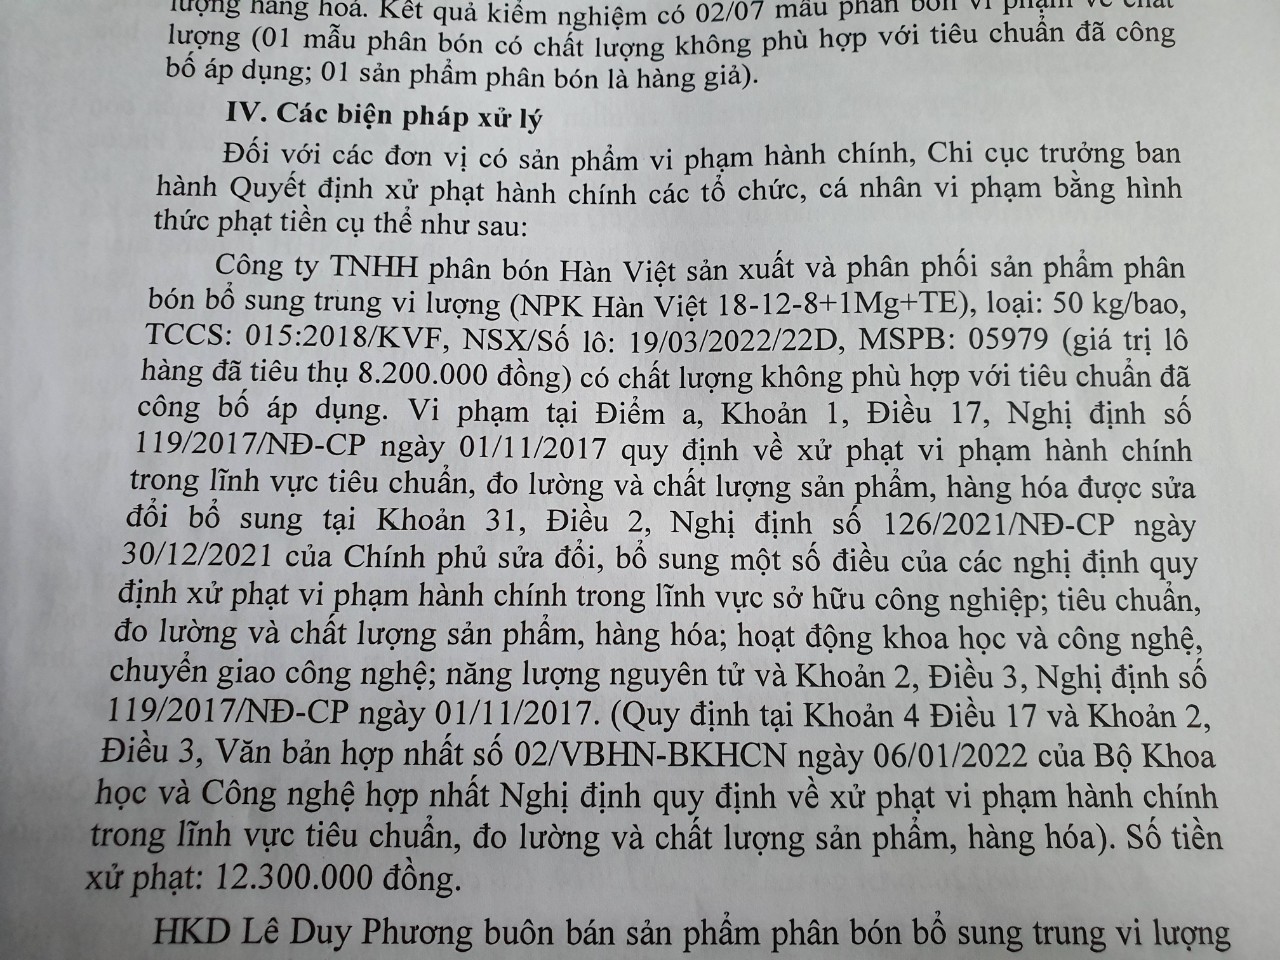 Công ty TNHH phân bón Hàn Việt bị xử phạt trên 12 triệu đồng - Ảnh 1.